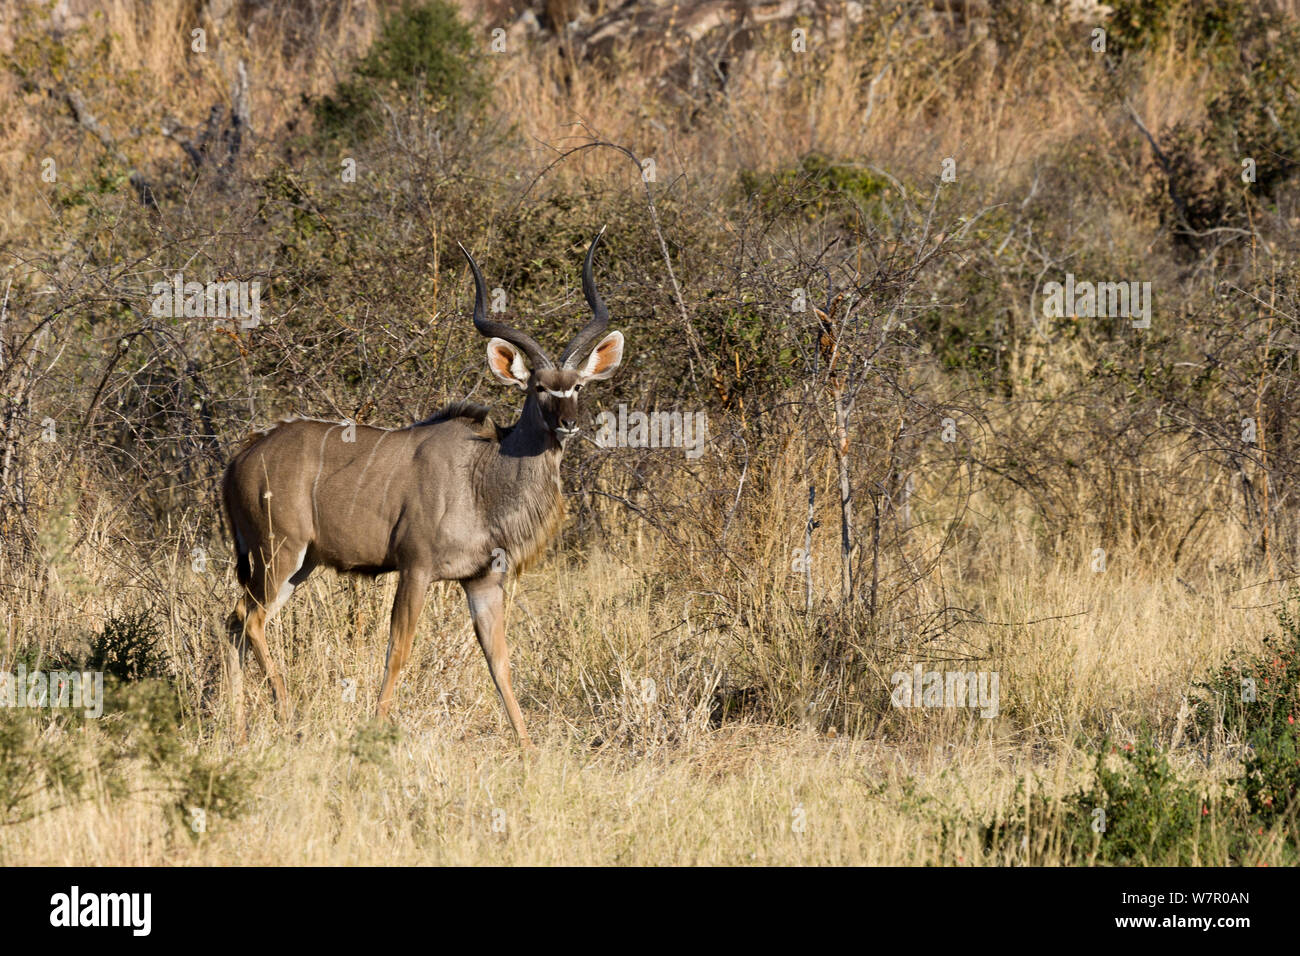 Greater kudu (Tragelaphus strepsiceros) Chobe National Park, Botswana Stock Photo